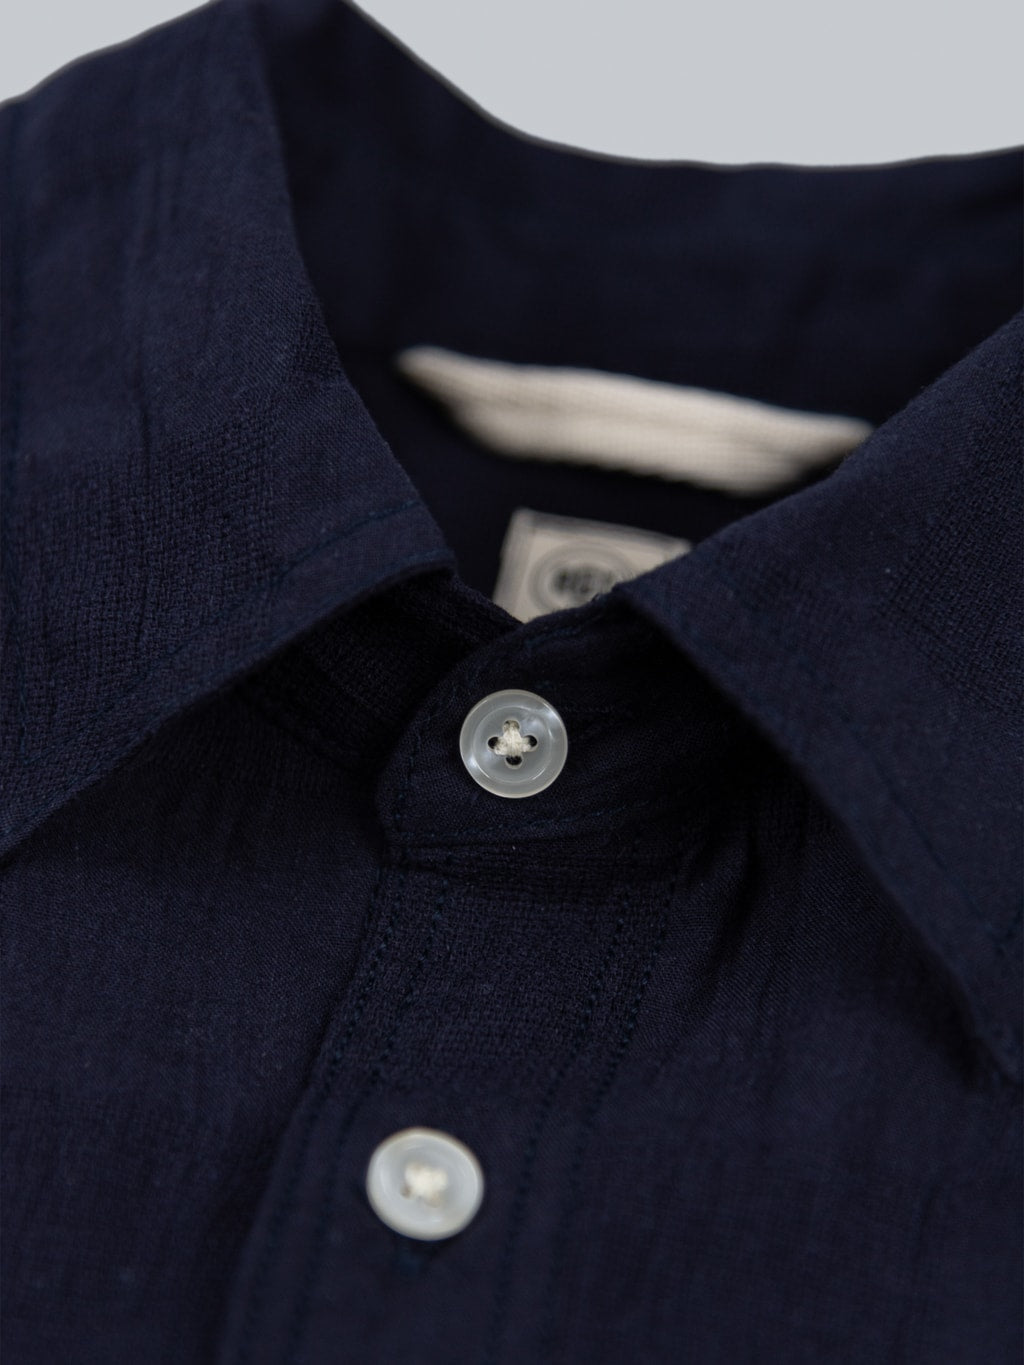 rogue territory jumper shirt navy checkered  buttons closeup